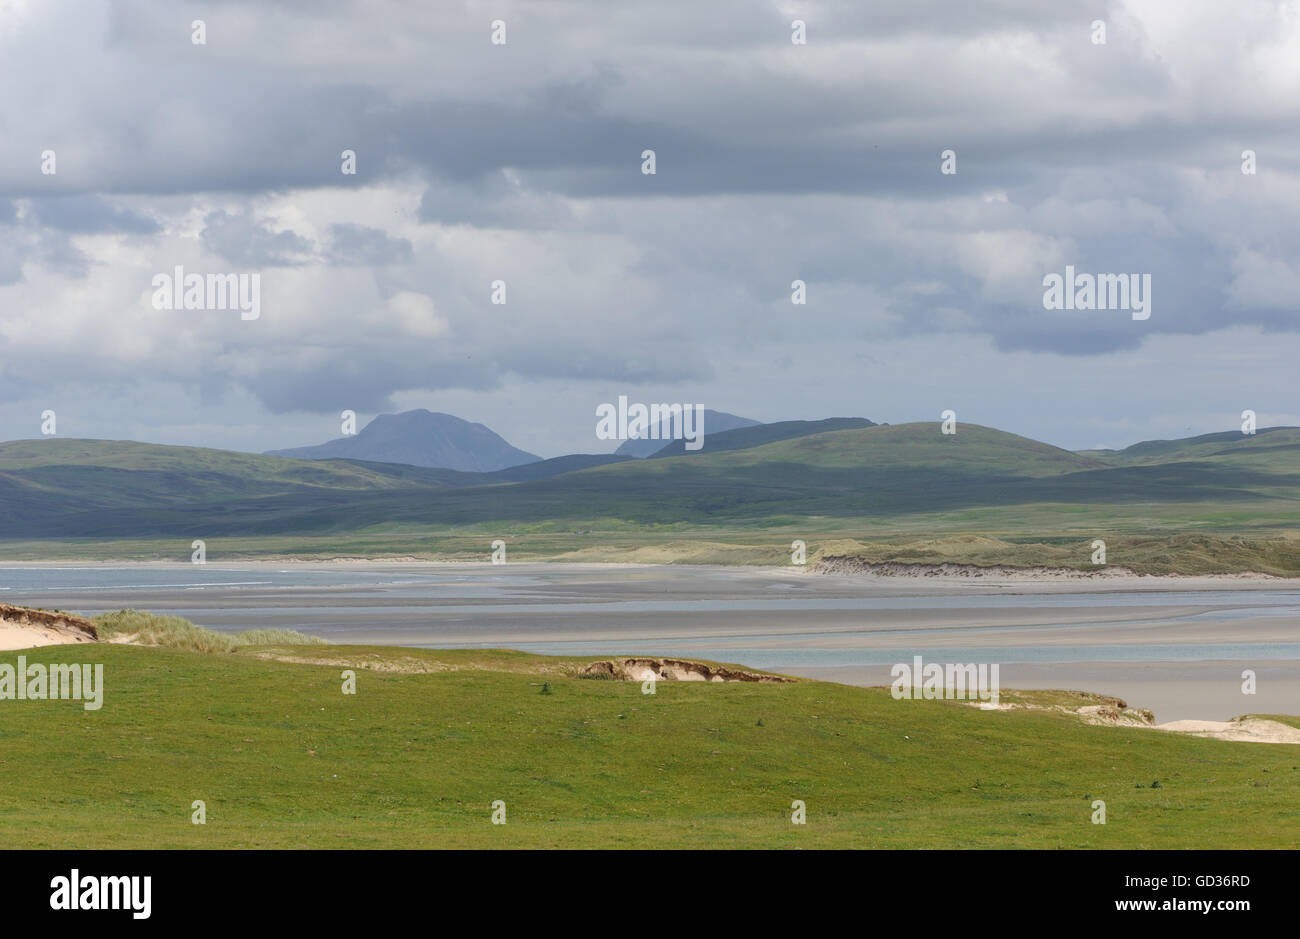 Loch Gruinart à marée basse avec les Paps of Jura dans la distance. Gruinart, Islay, Hébrides intérieures, Argyll, Scotland, UK. Banque D'Images